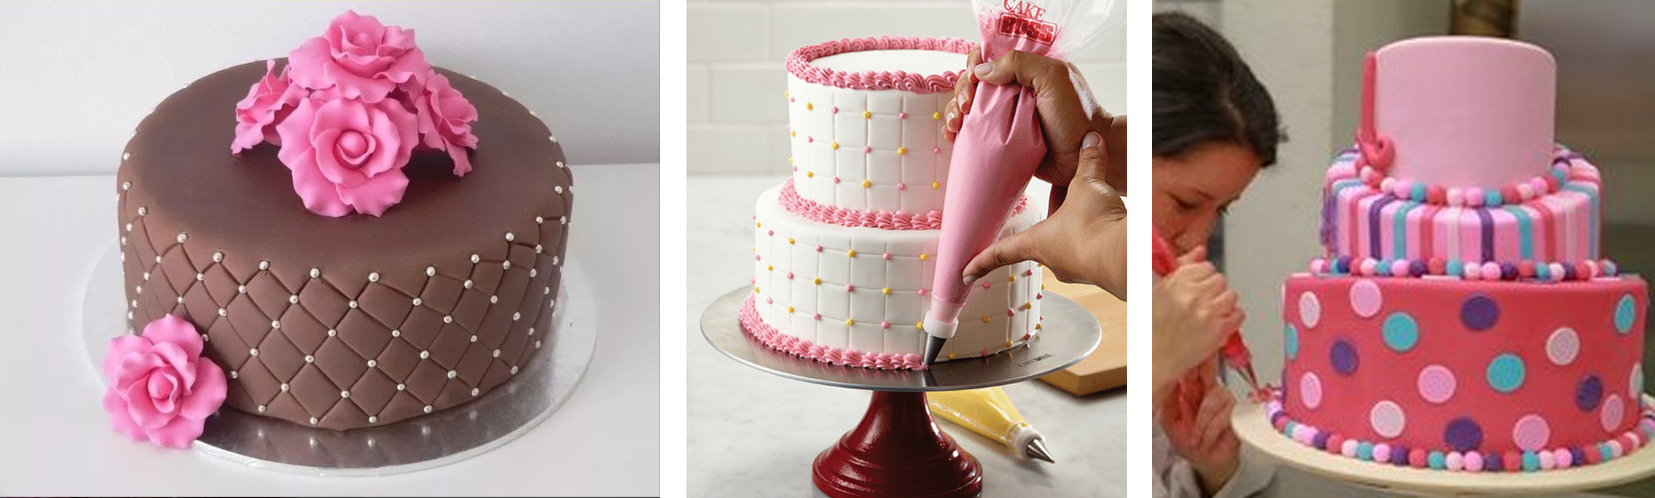 Trio de bolos confeitados com pasta americana. Bolos confeitados simples, com decoração em pasta americana delicada e colorida.